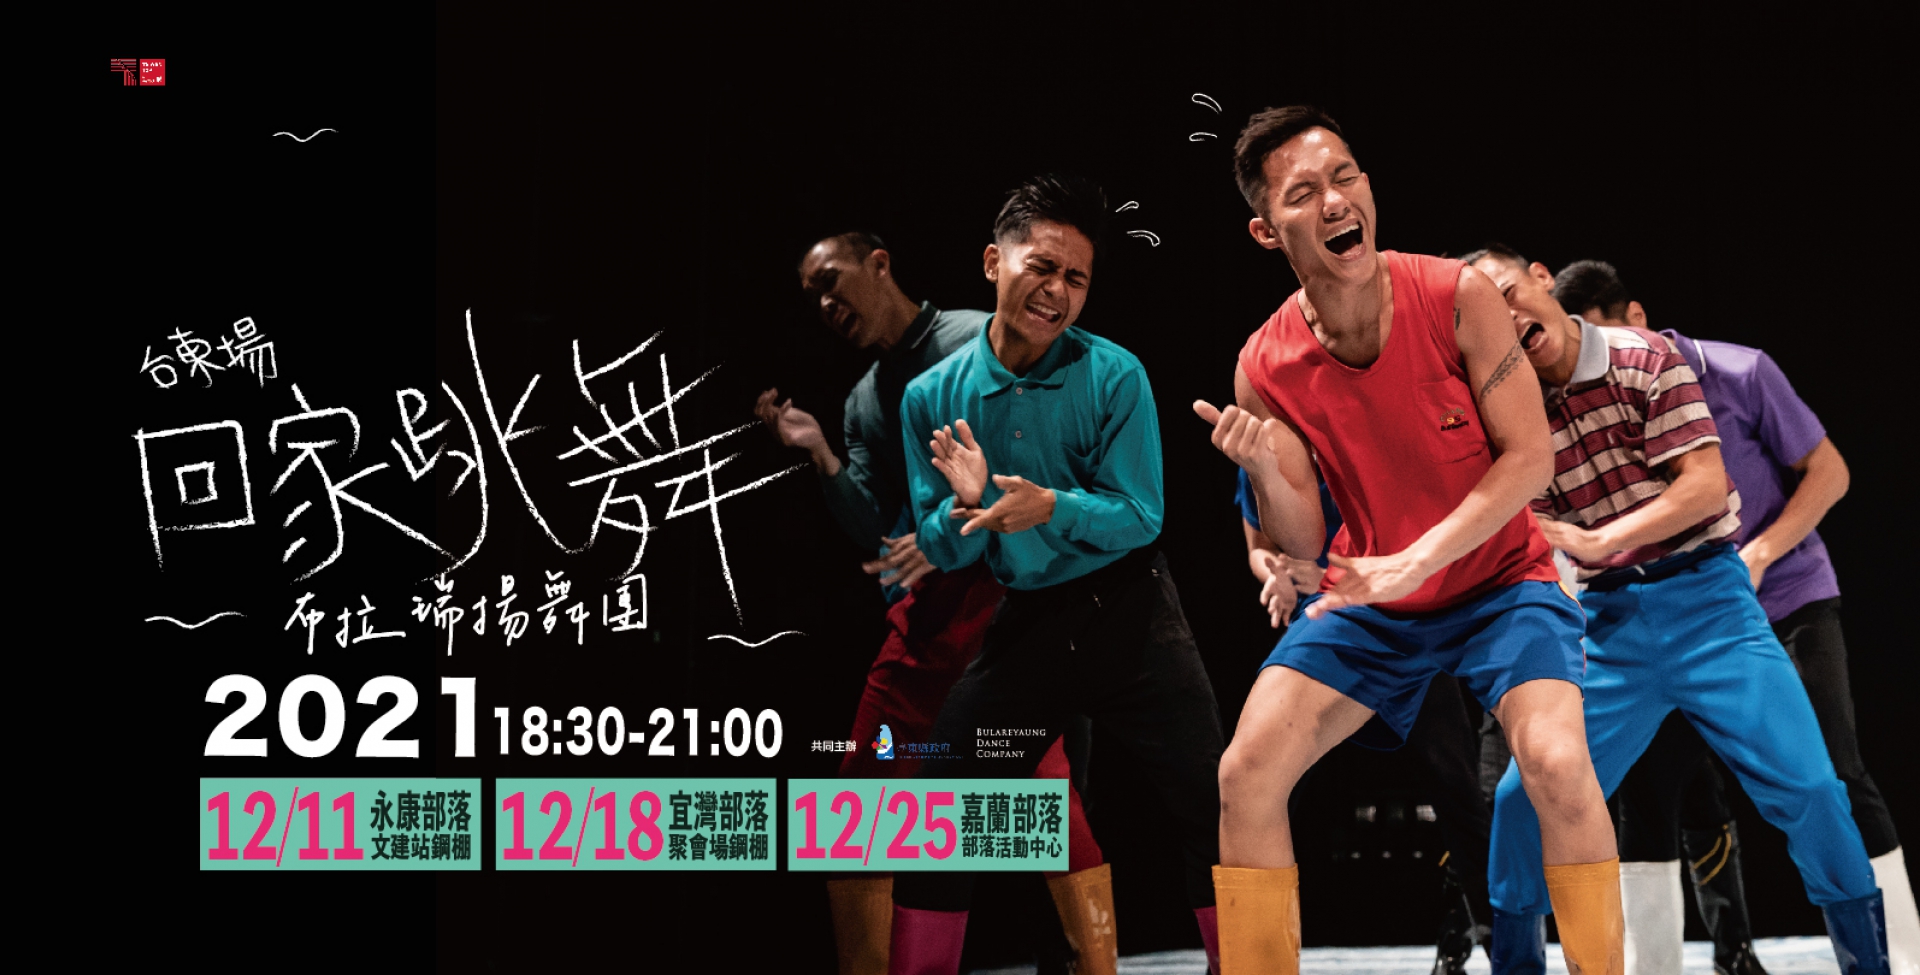 部落是布拉瑞揚舞團最美的劇場，12月臺東「回家跳舞—部落巡演」